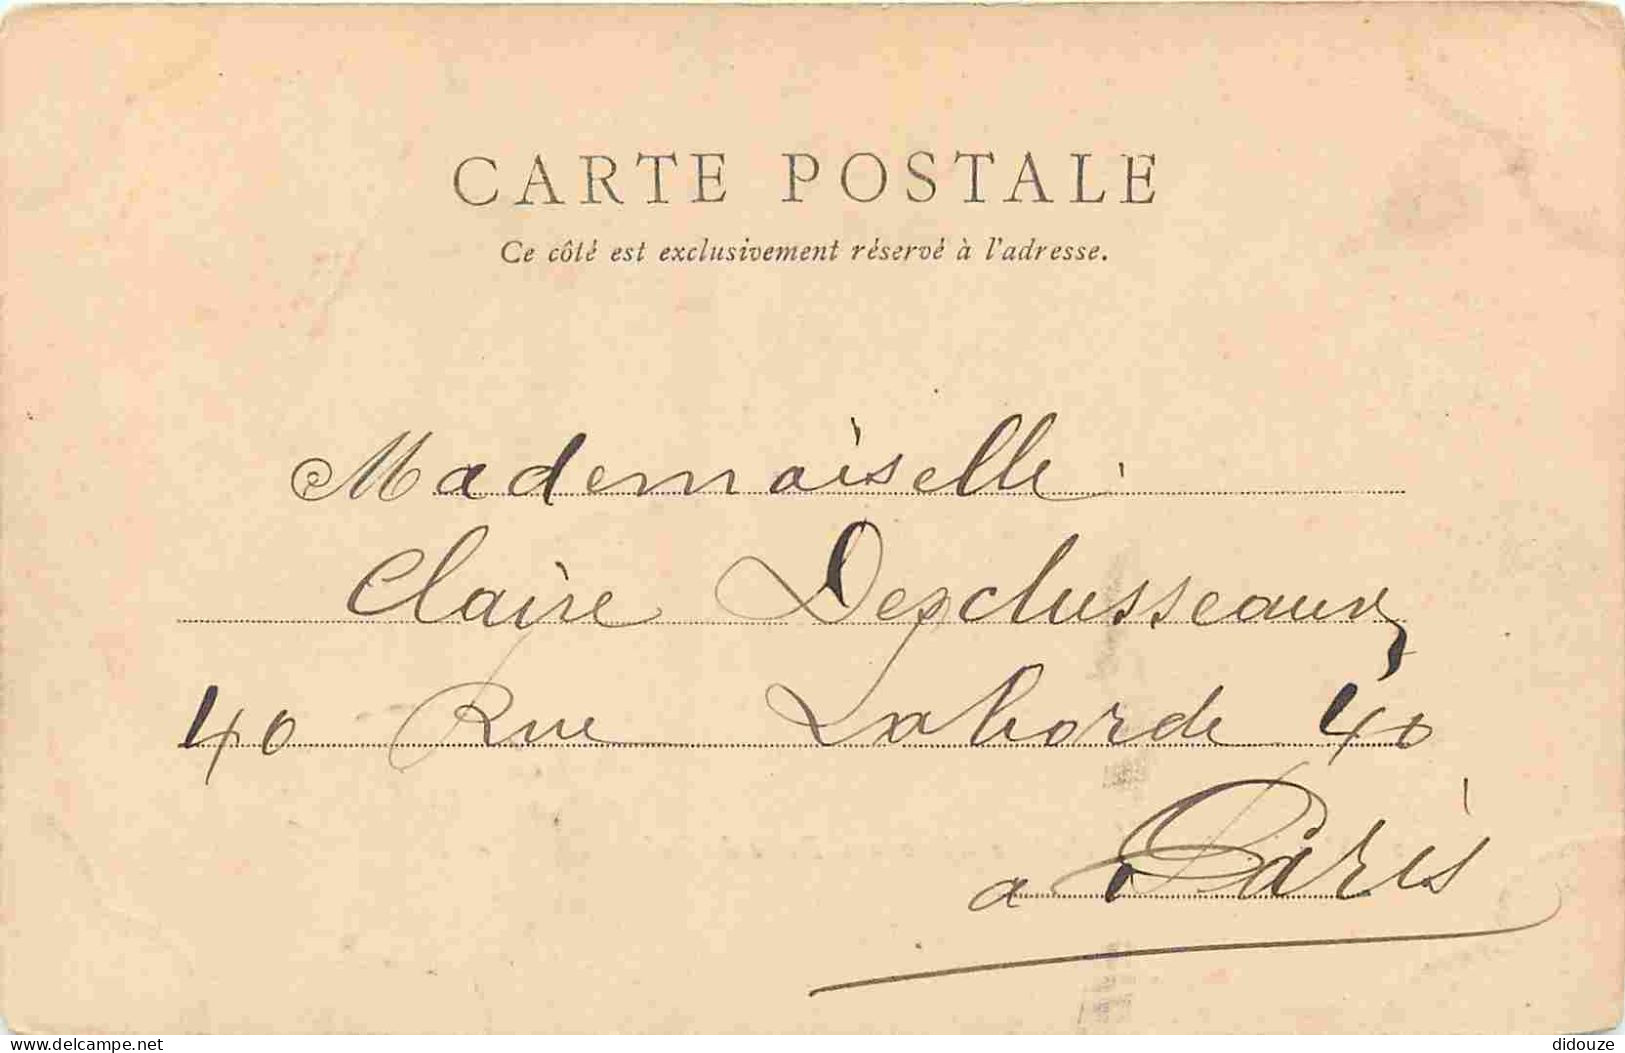 94 - Vincennes - Vue Intérieure Du Fort De Vincennes - Porte Du Bois - Précurseur - CPA - Oblitération Ronde De 1903 - V - Vincennes